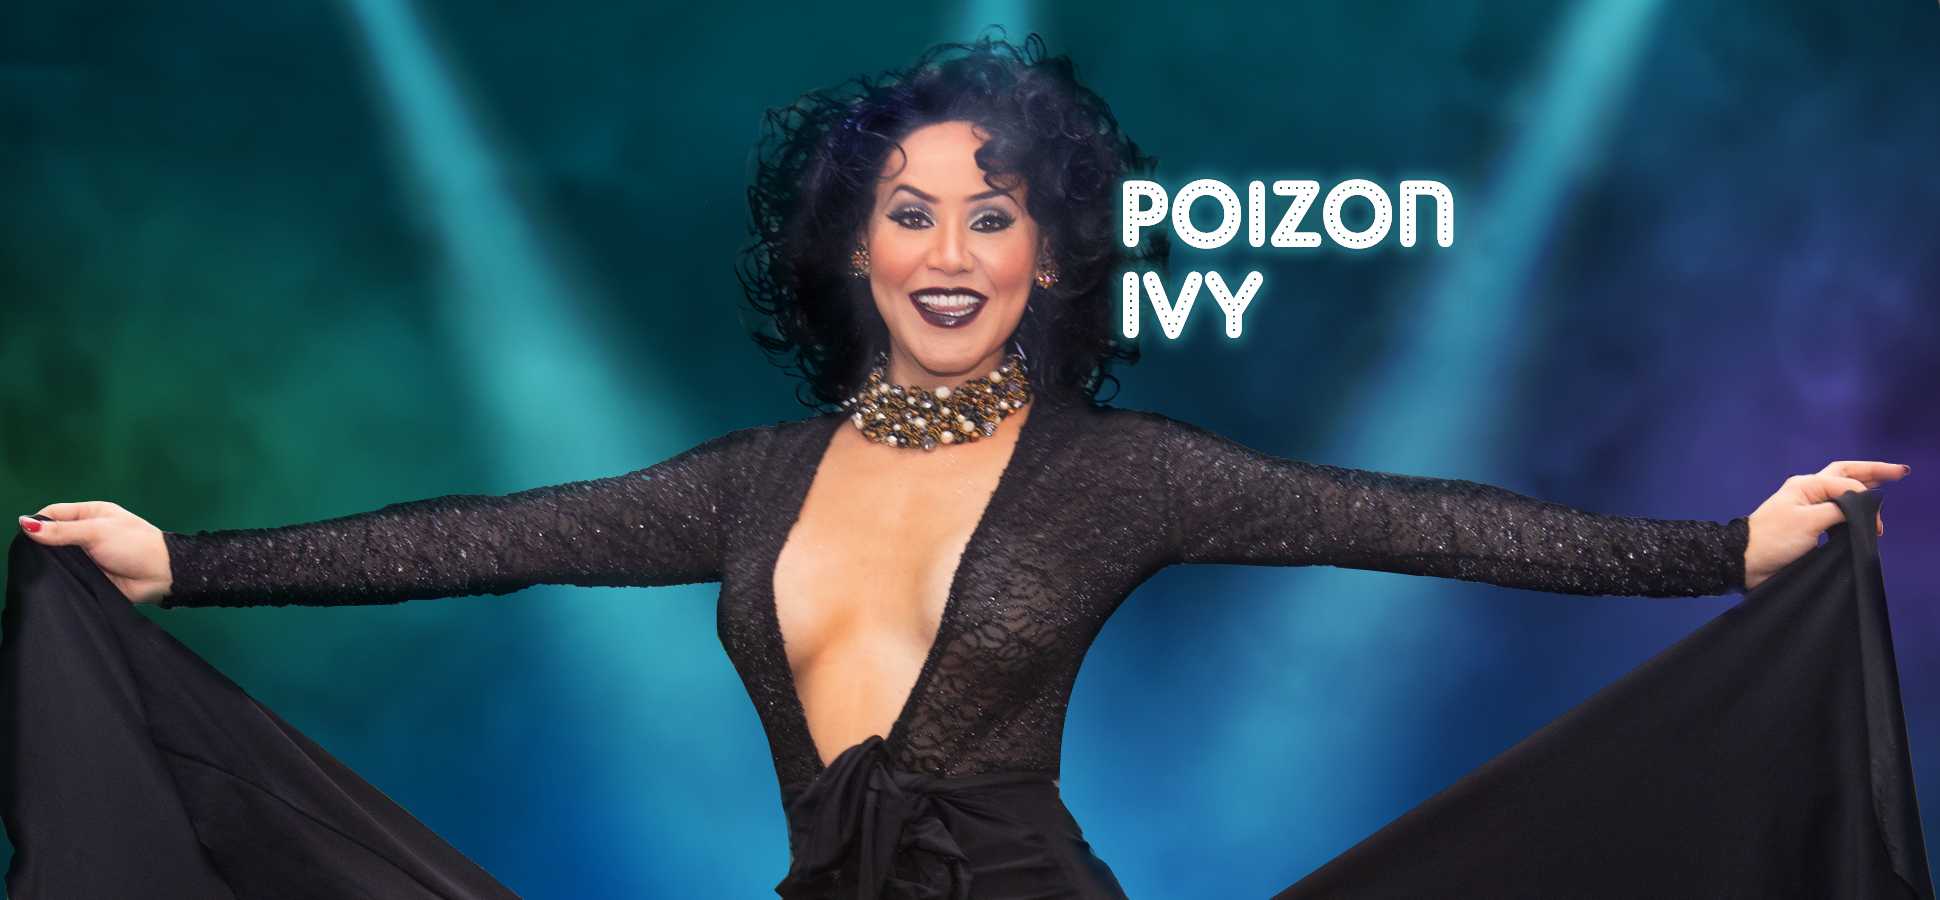 Poizon Ivy